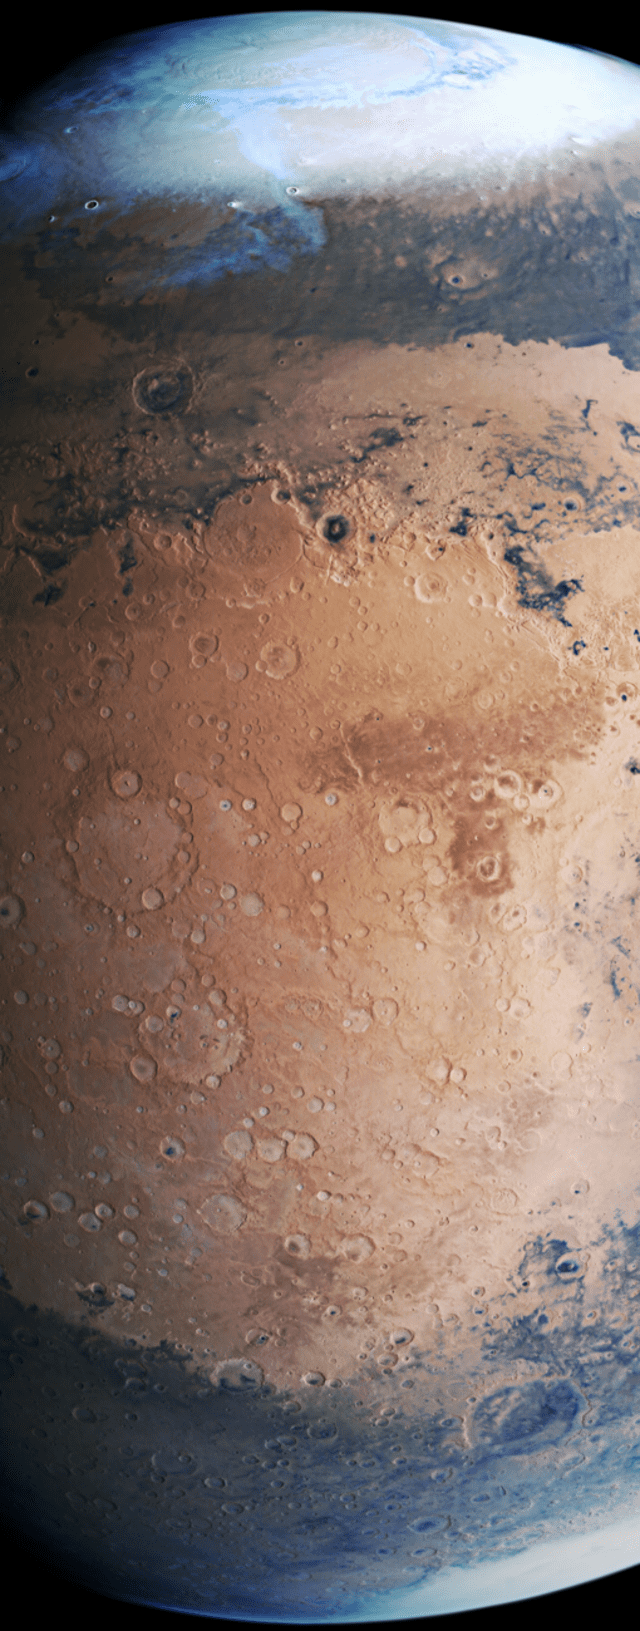 Imagen completa capturada por la sonda Mars Express - ESA / DLR